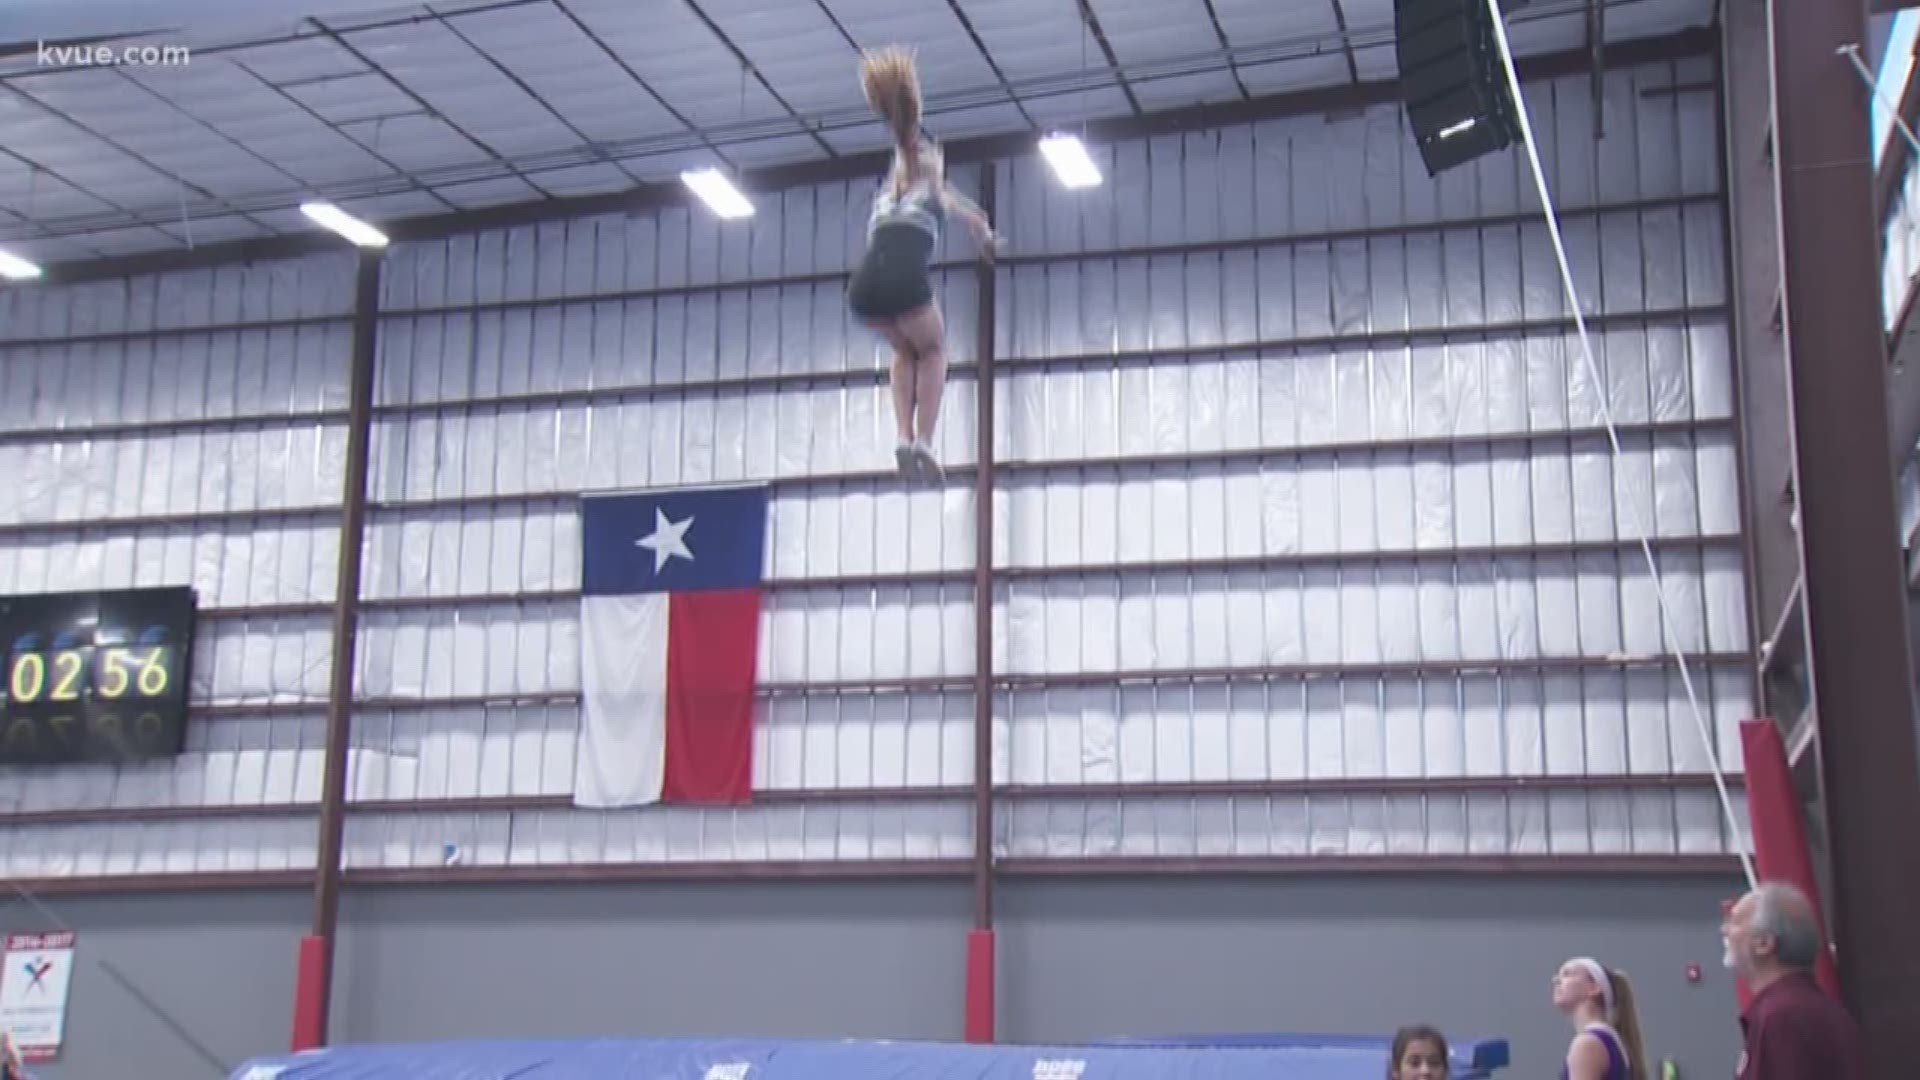 Gymnastics, Austin, TX